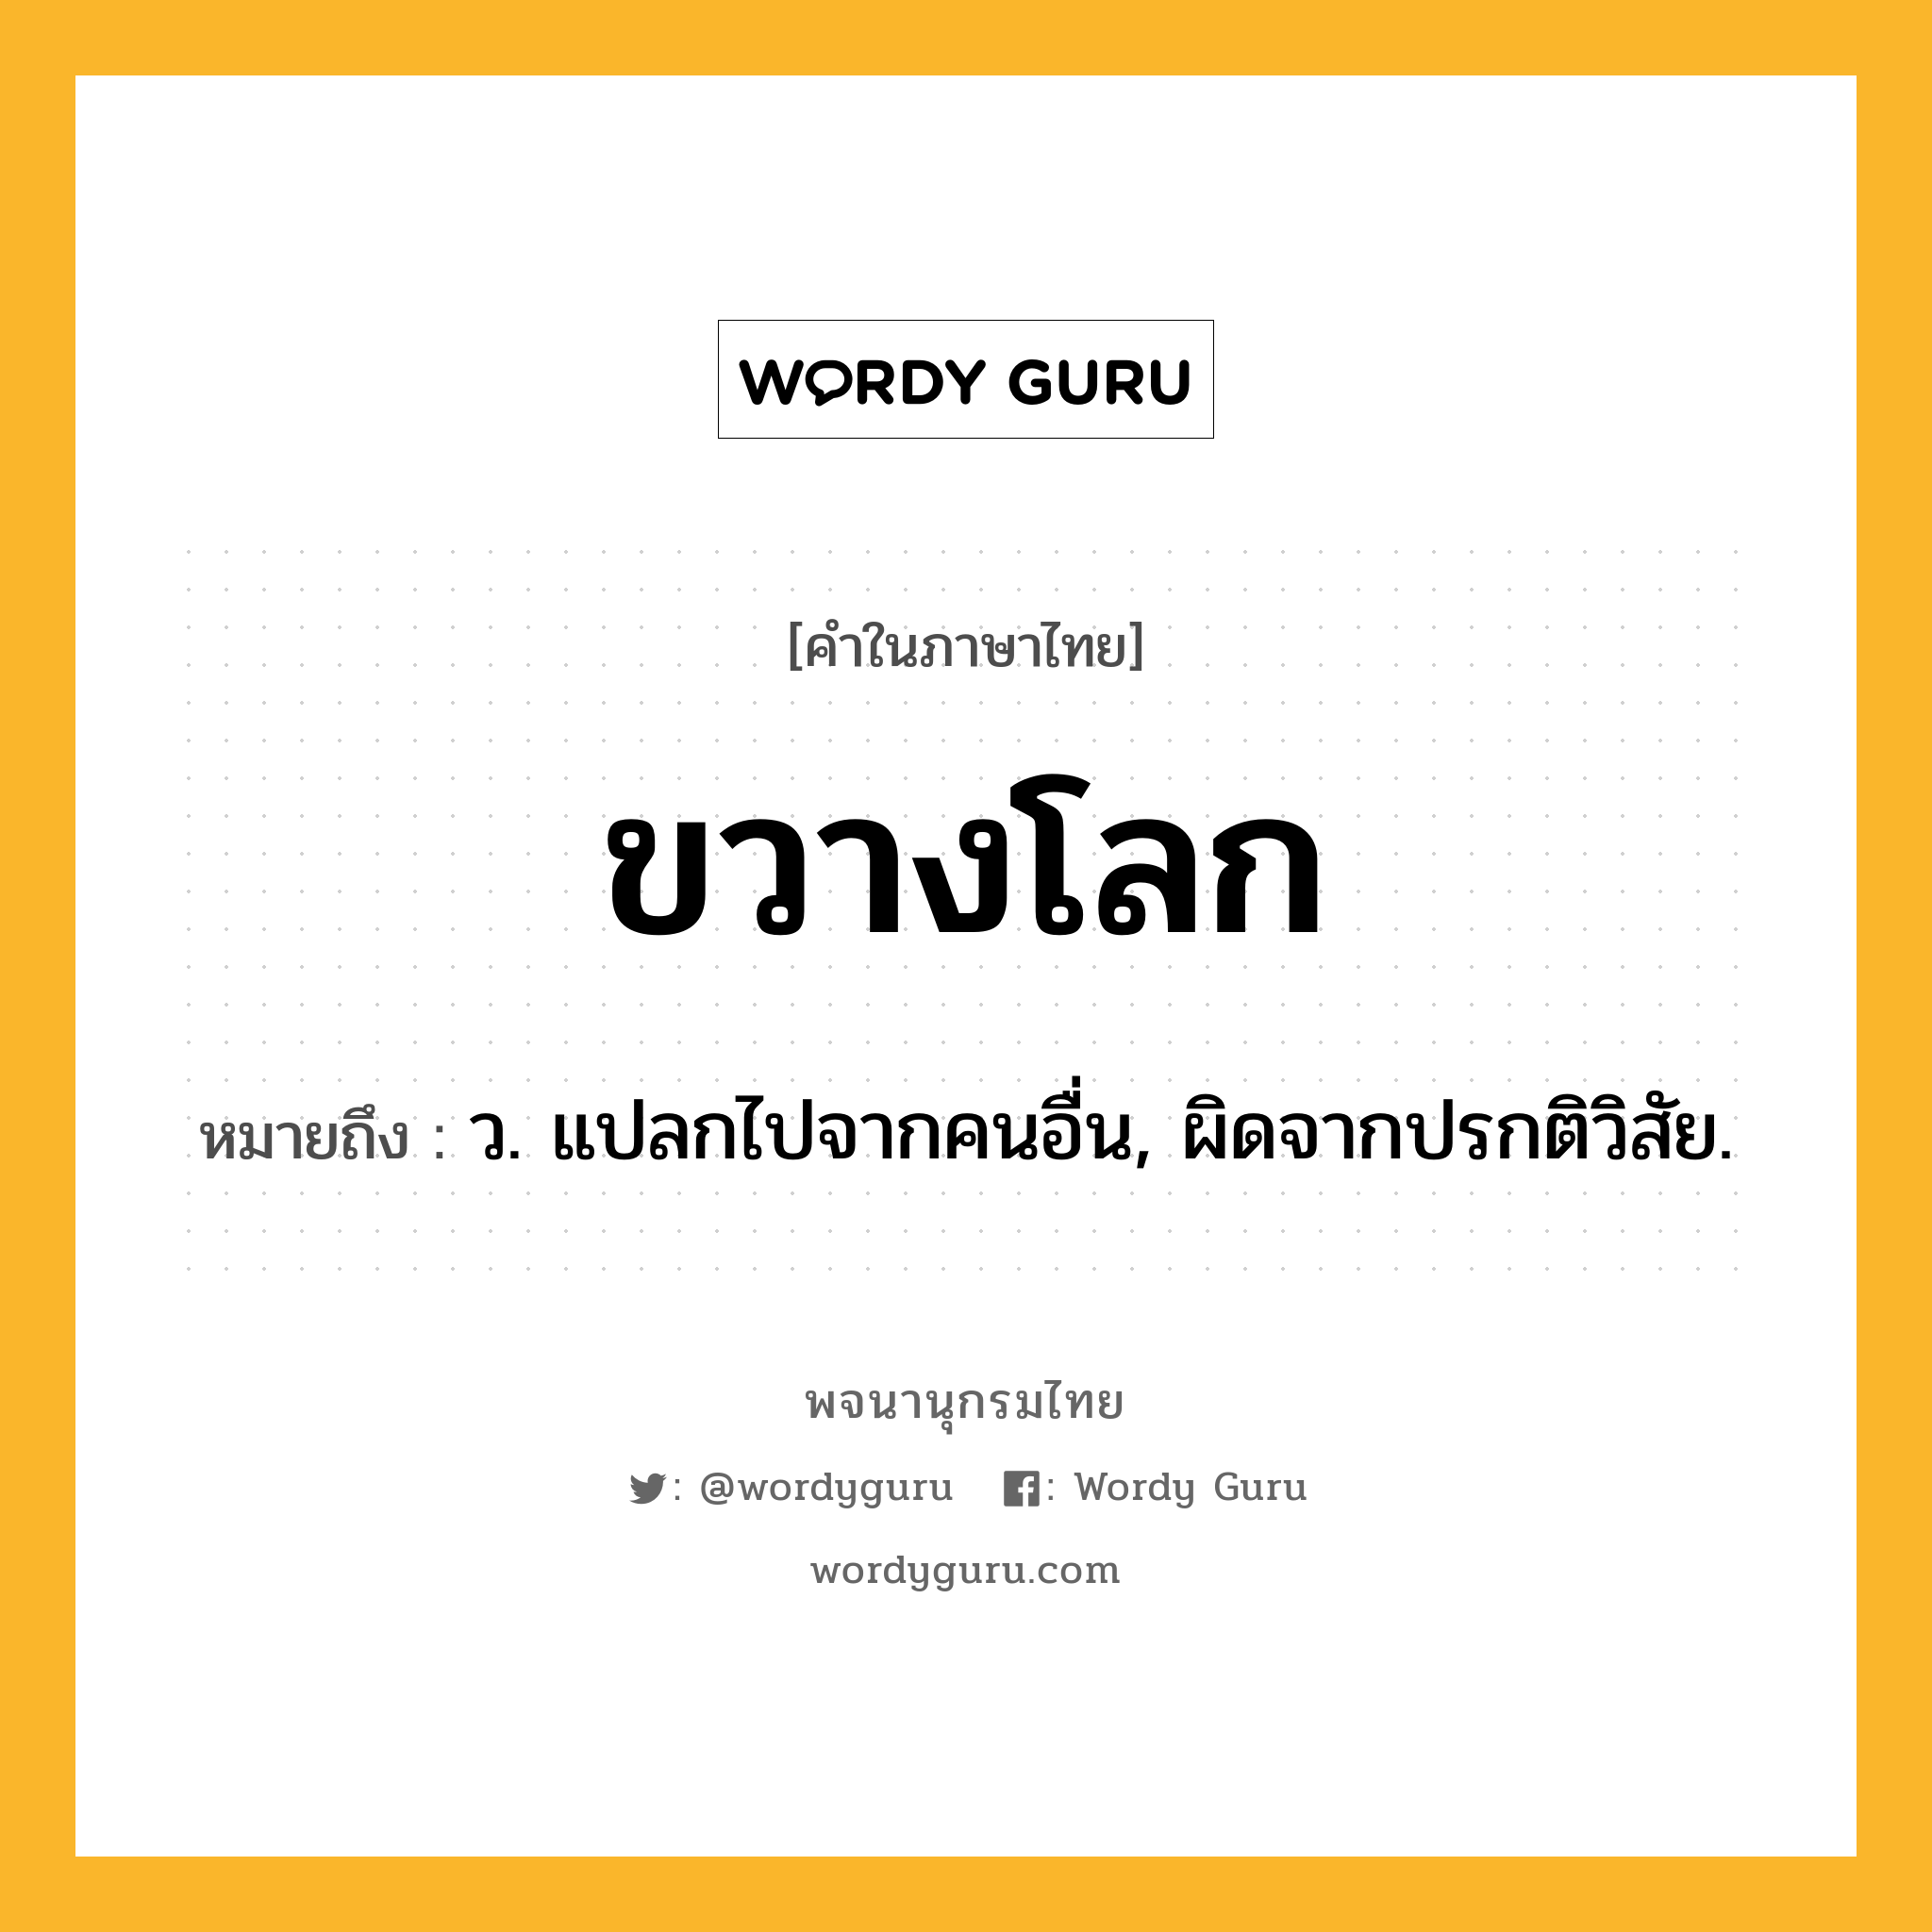 ขวางโลก หมายถึงอะไร?, คำในภาษาไทย ขวางโลก หมายถึง ว. แปลกไปจากคนอื่น, ผิดจากปรกติวิสัย.